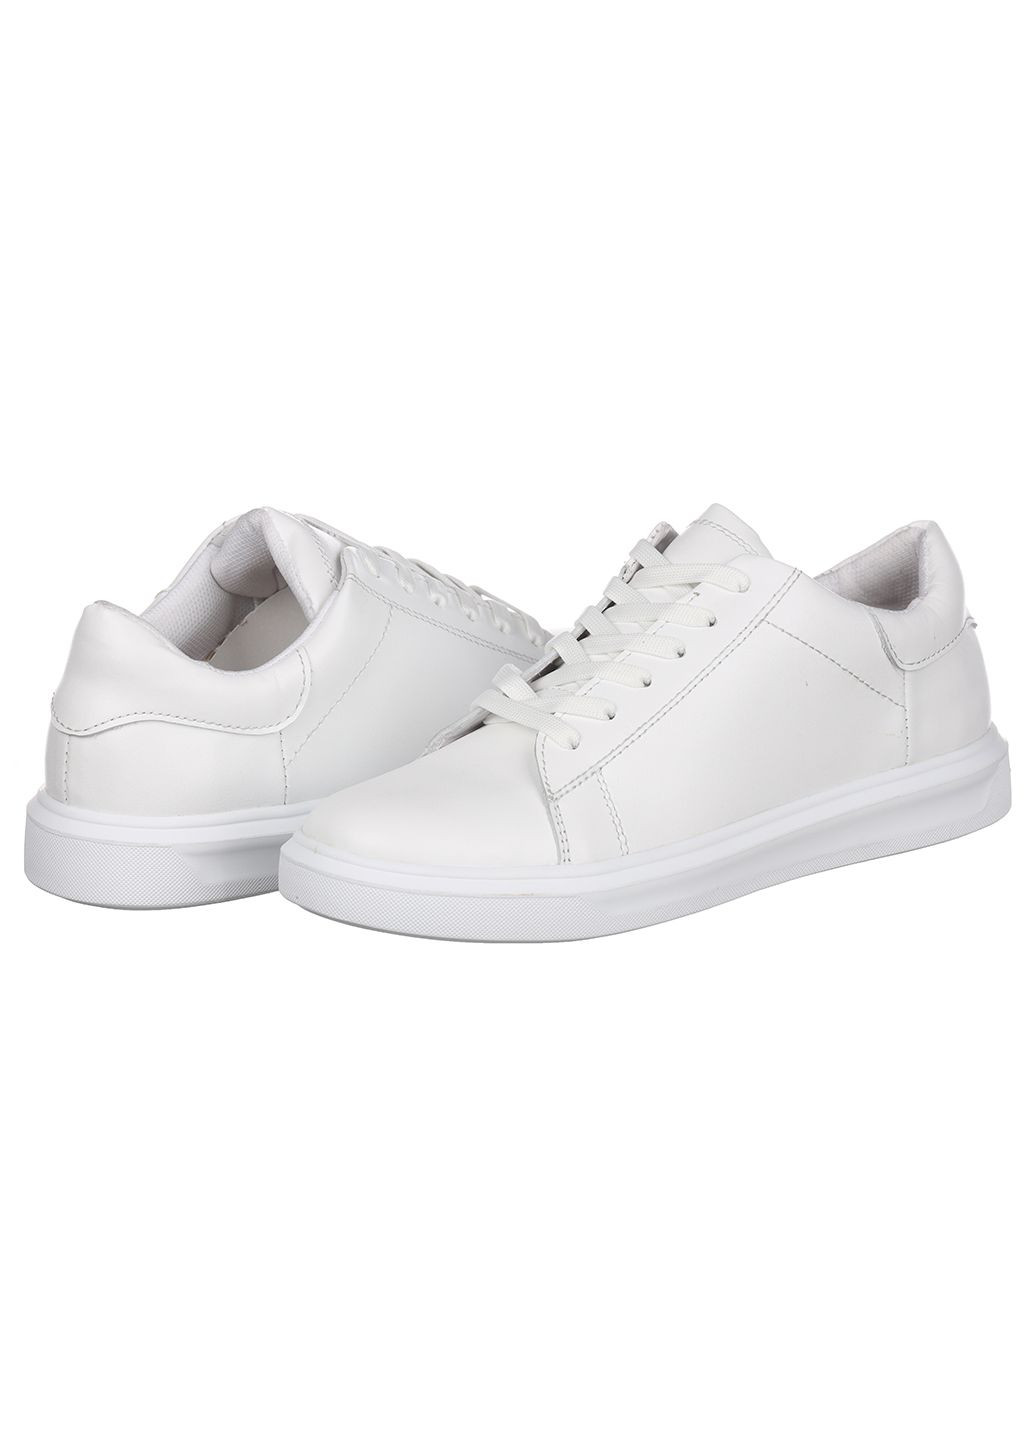 Білі осінні жіночі кросівки з шкіри 135 б Trendy